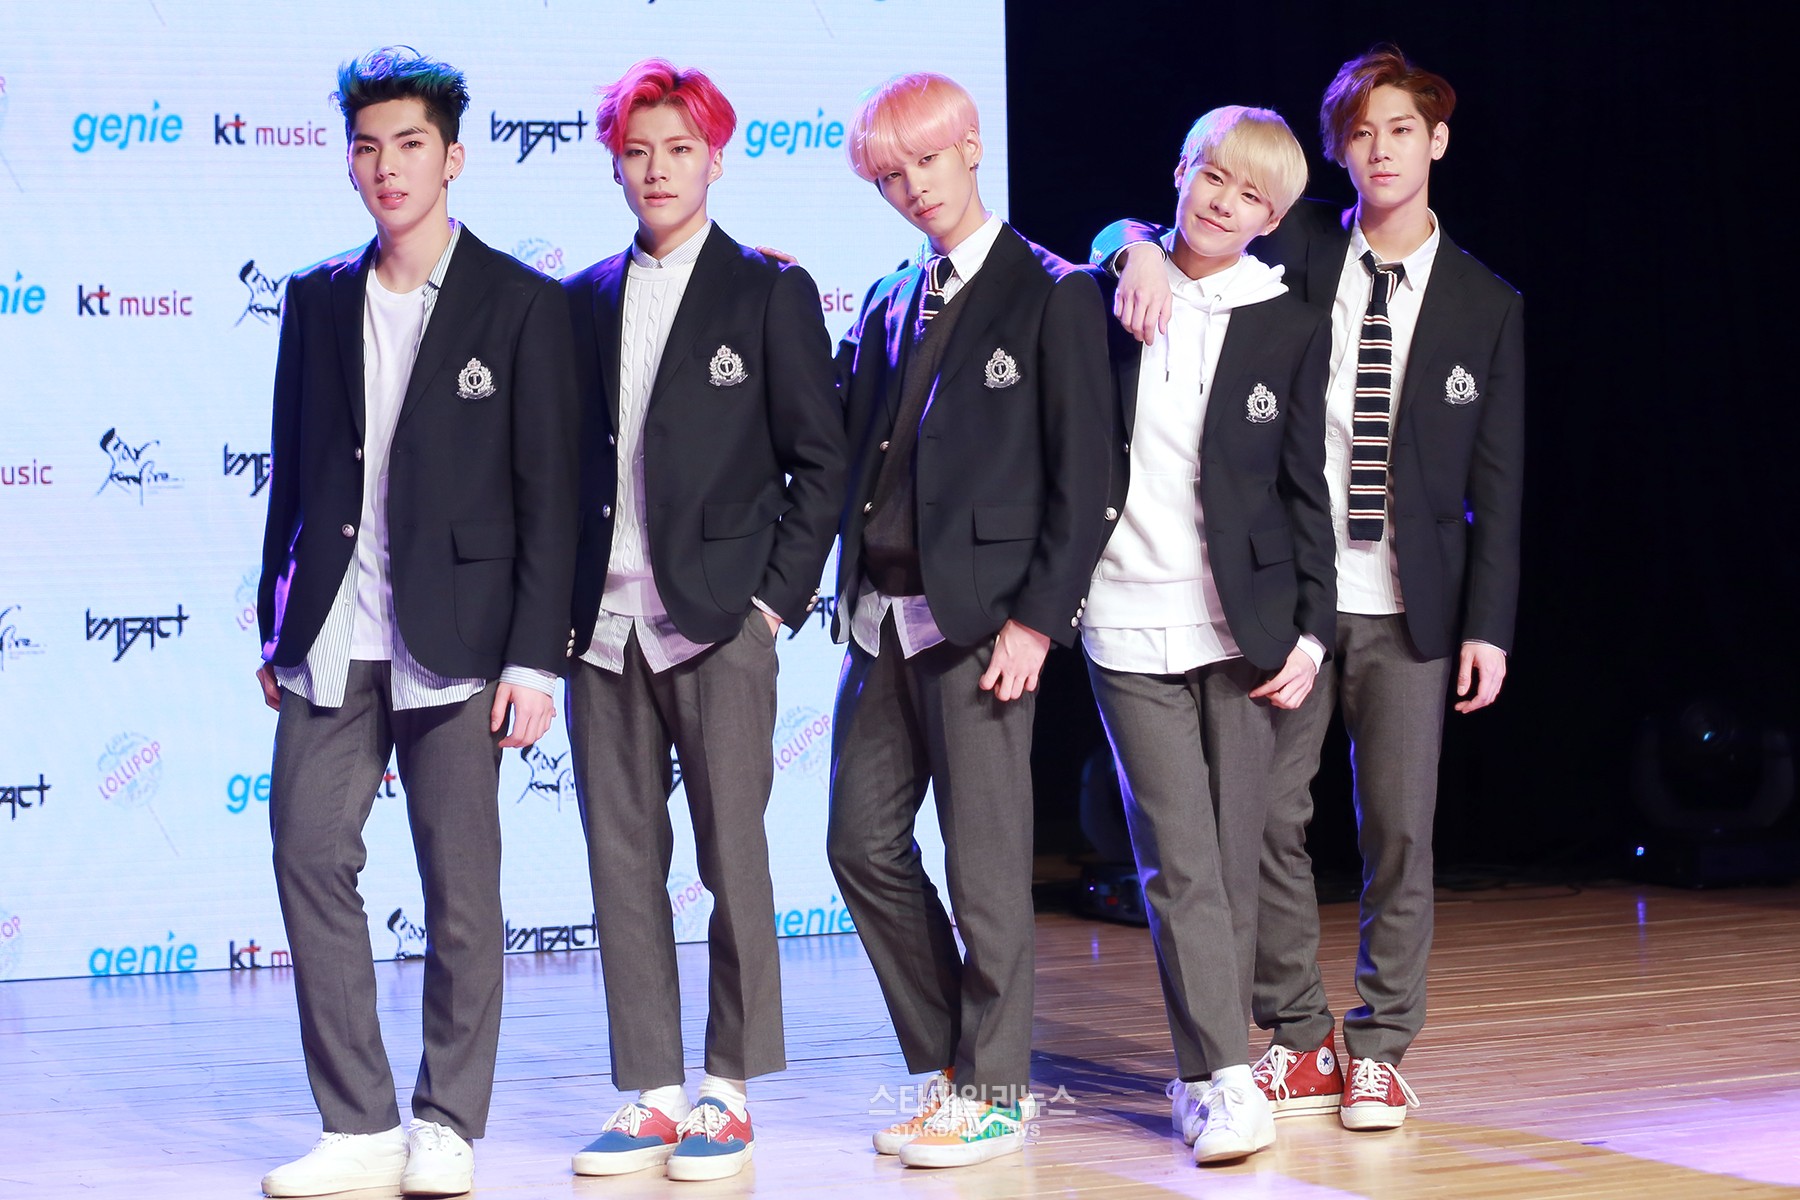 school uniform, kpop school uniform, school uniform kpop, school uniform concept, kpop school uniform concept, imfact school uniform